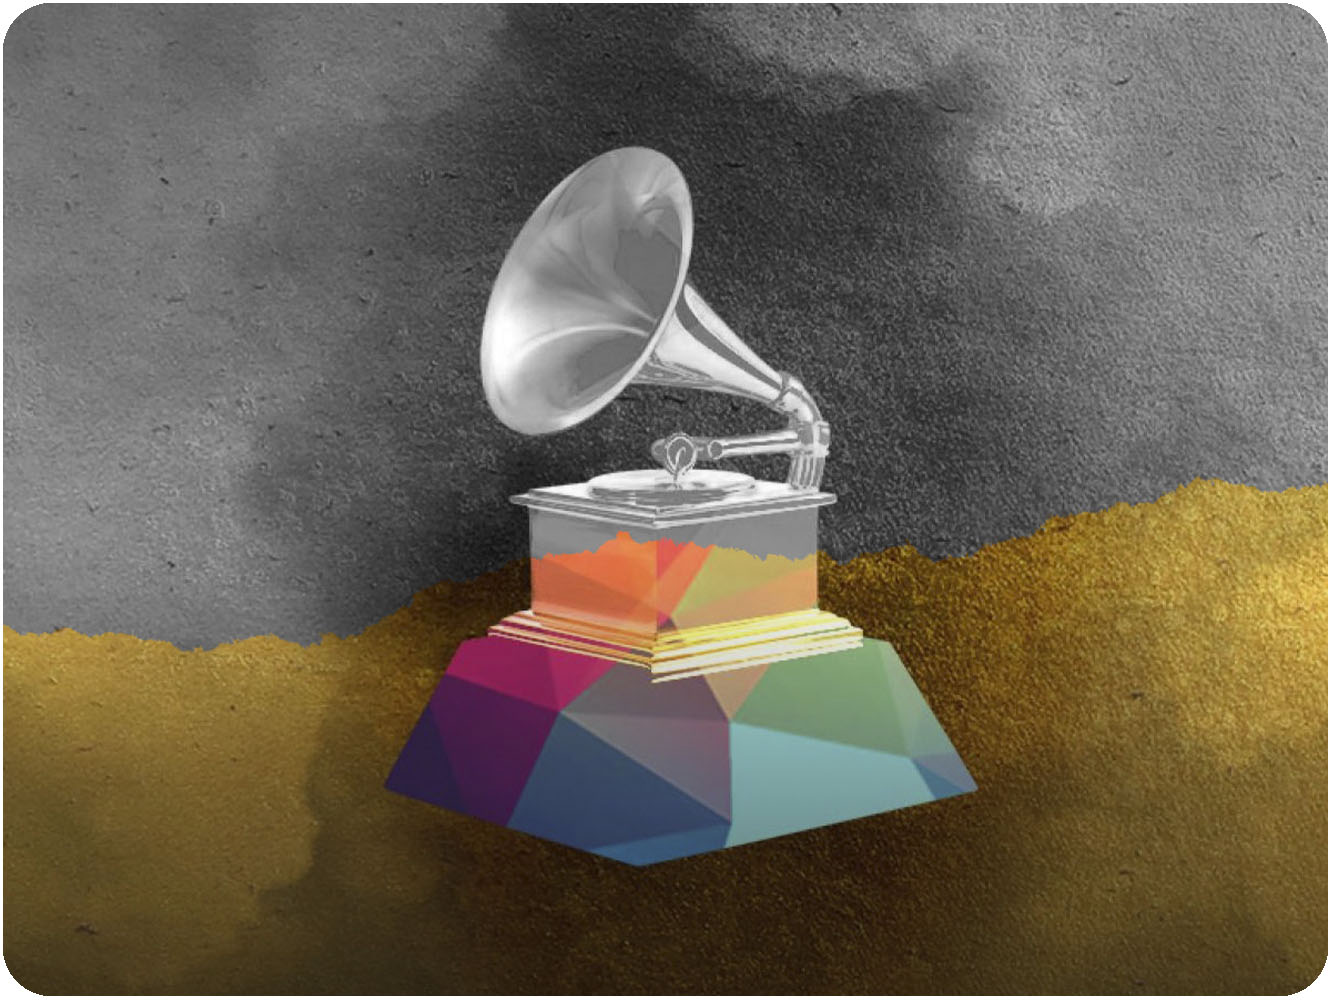  Los Premios Grammy quedan suspendidos hasta -por ahora- el 14 de marzo